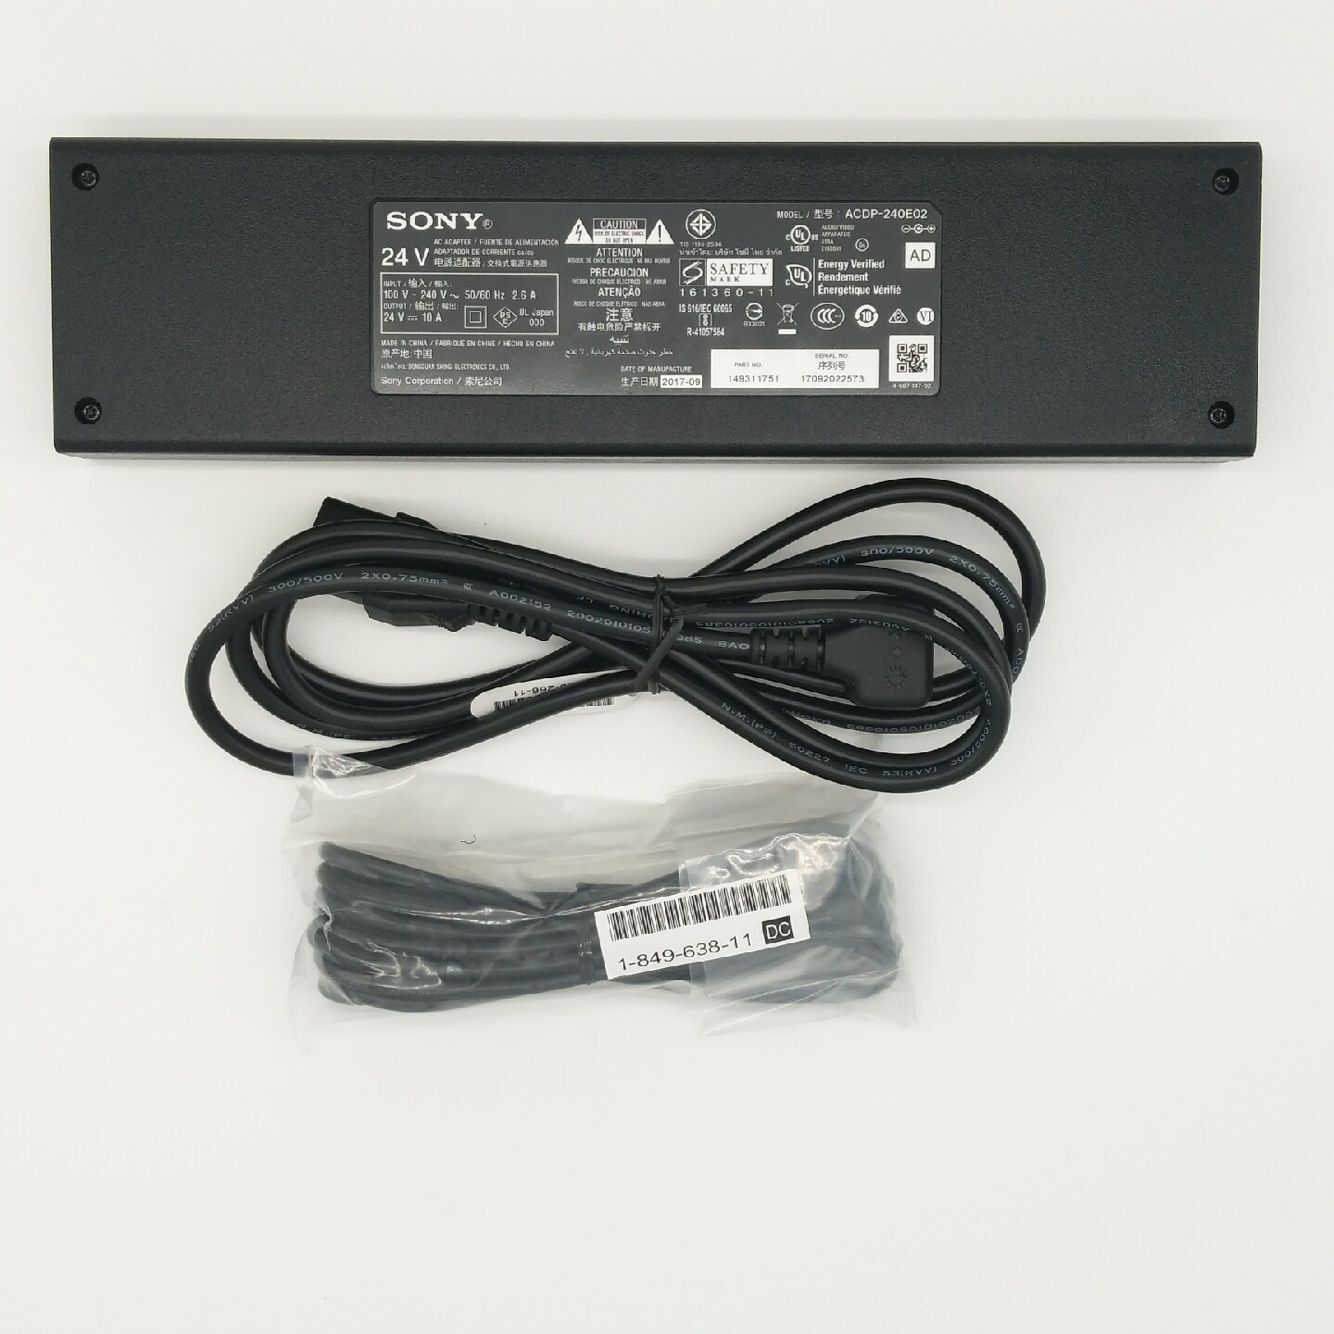 Original 240W Sony 1-493-117-52 acdp-240e02 AC Adaptor